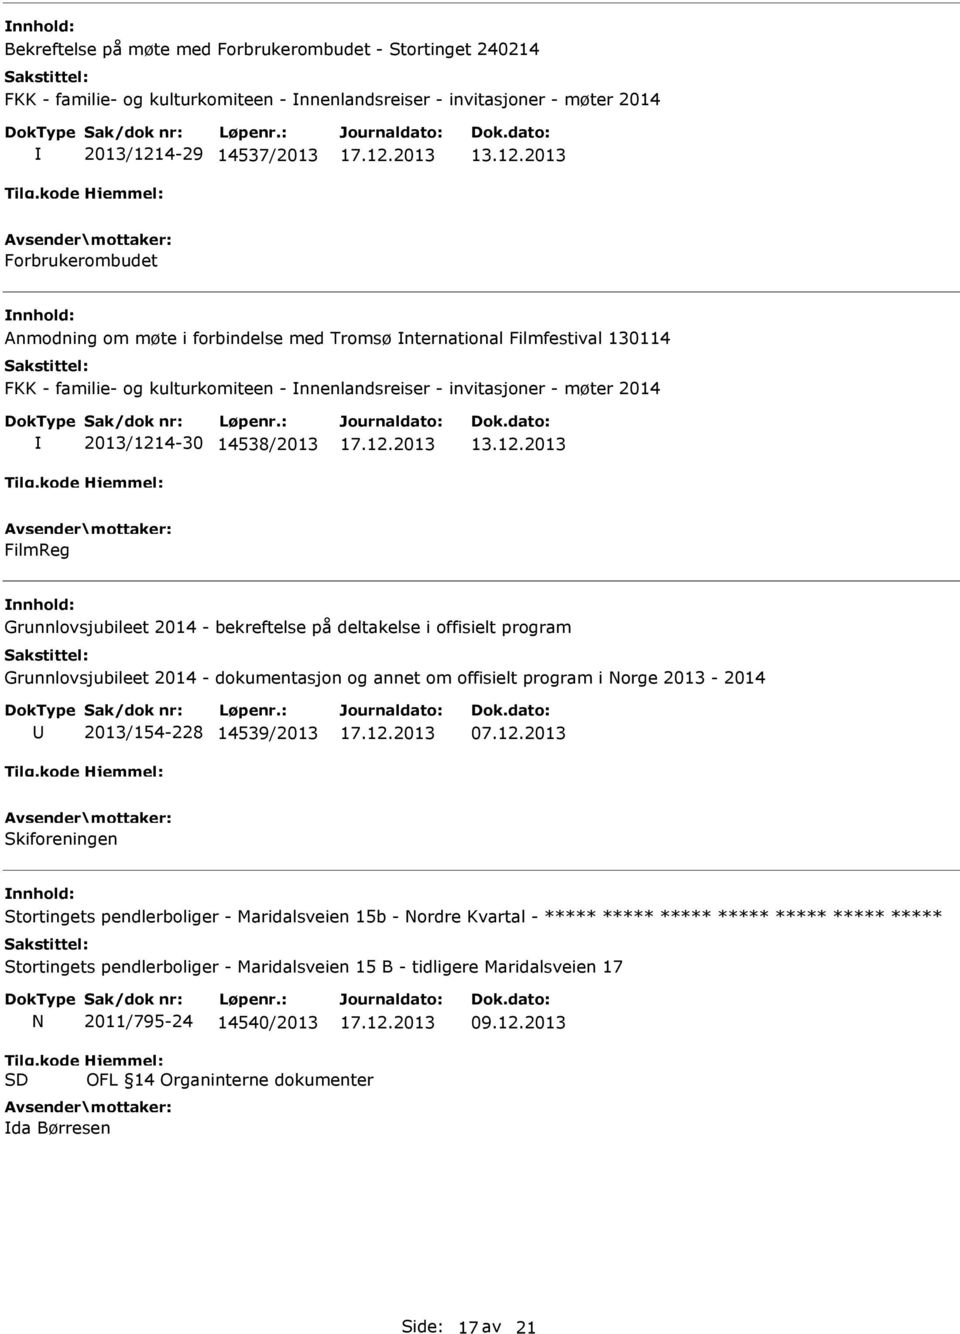 bekreftelse på deltakelse i offisielt program Grunnlovsjubileet 2014 - dokumentasjon og annet om offisielt program i Norge 2013-2014 2013/154-228 14539/2013 07.12.